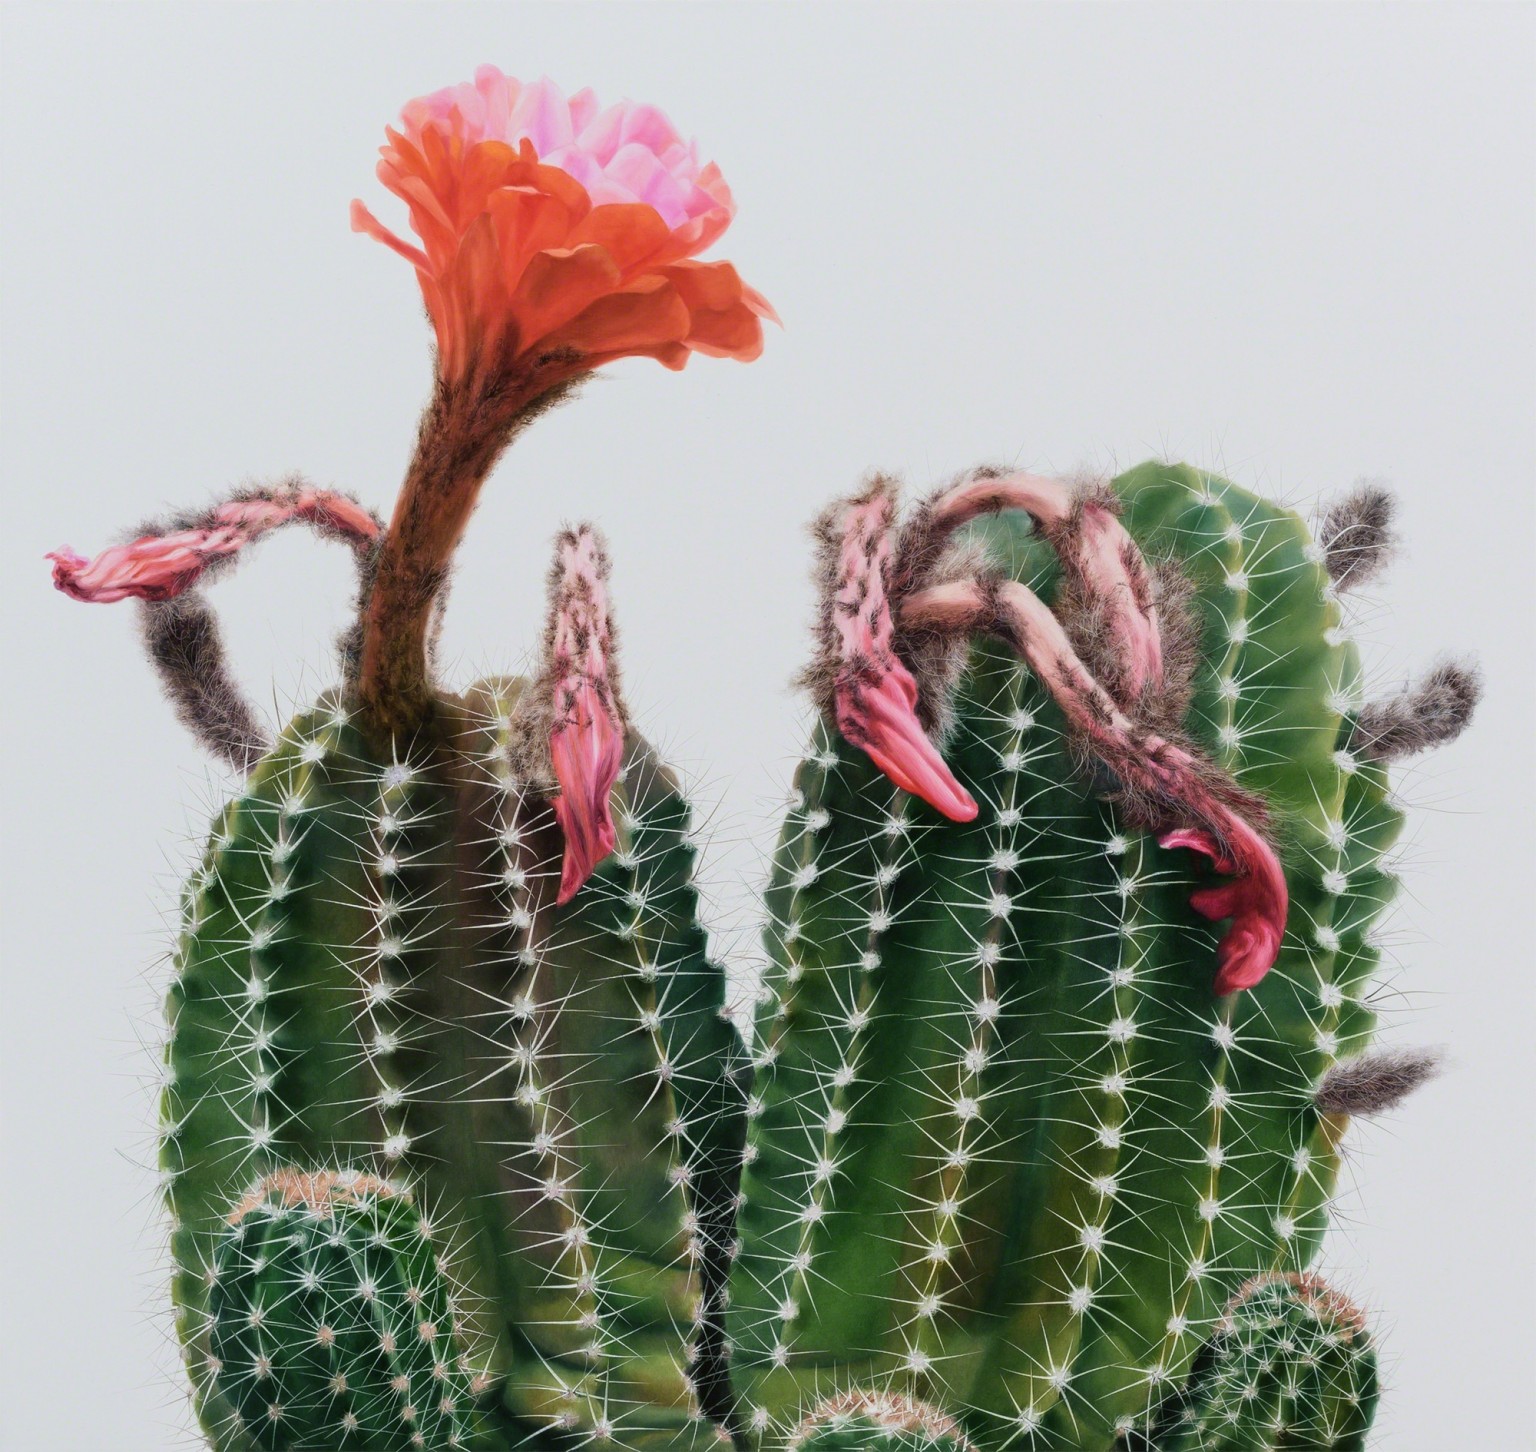 Hyperrealistic Cactus Paintings by Kwang-Ho Lee